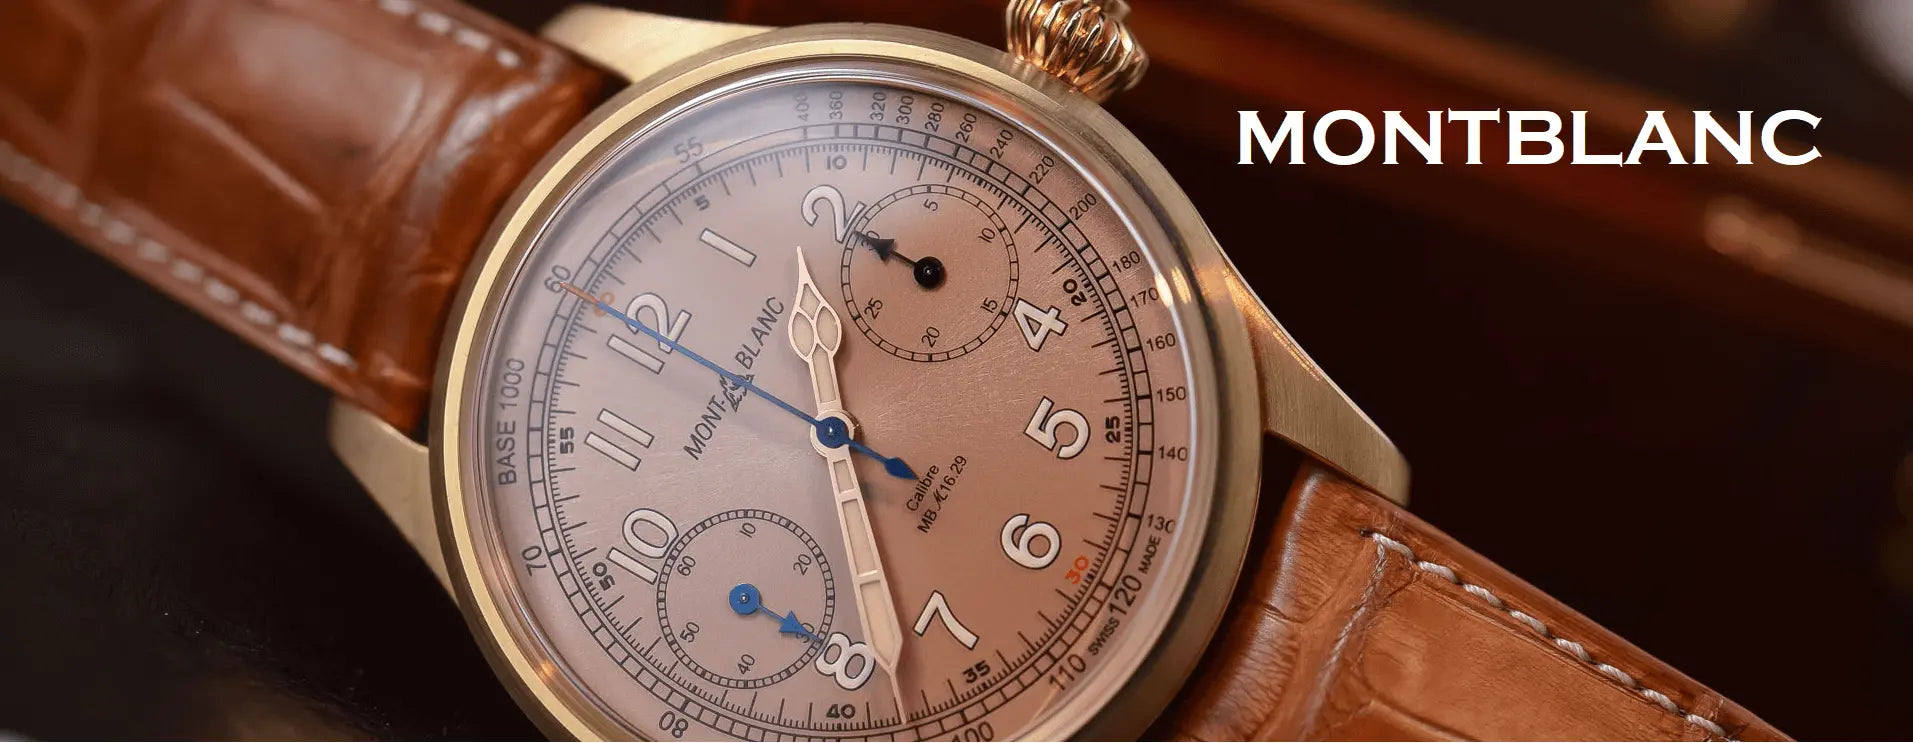 Montblanc watches